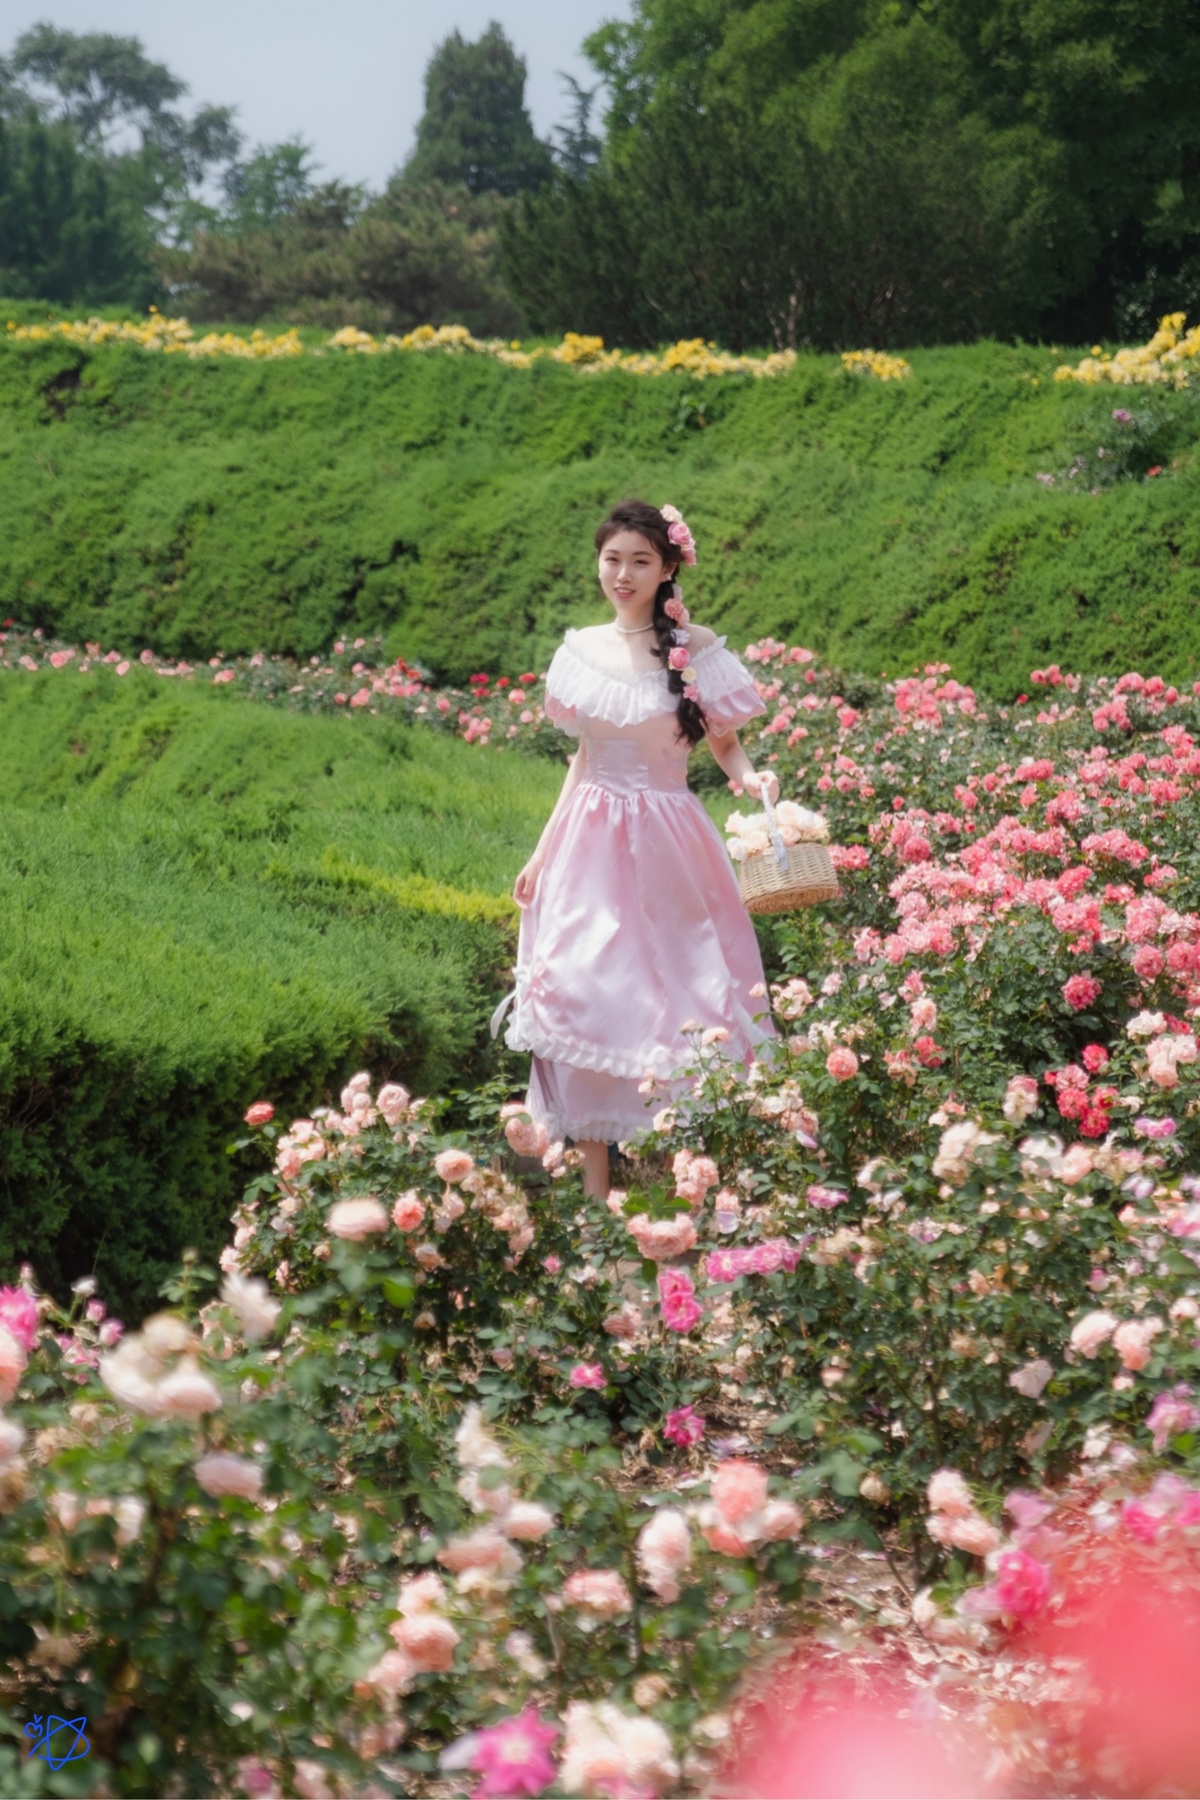 一个穿着粉红色连衣裙的年轻女子抱着篮子穿过花园区